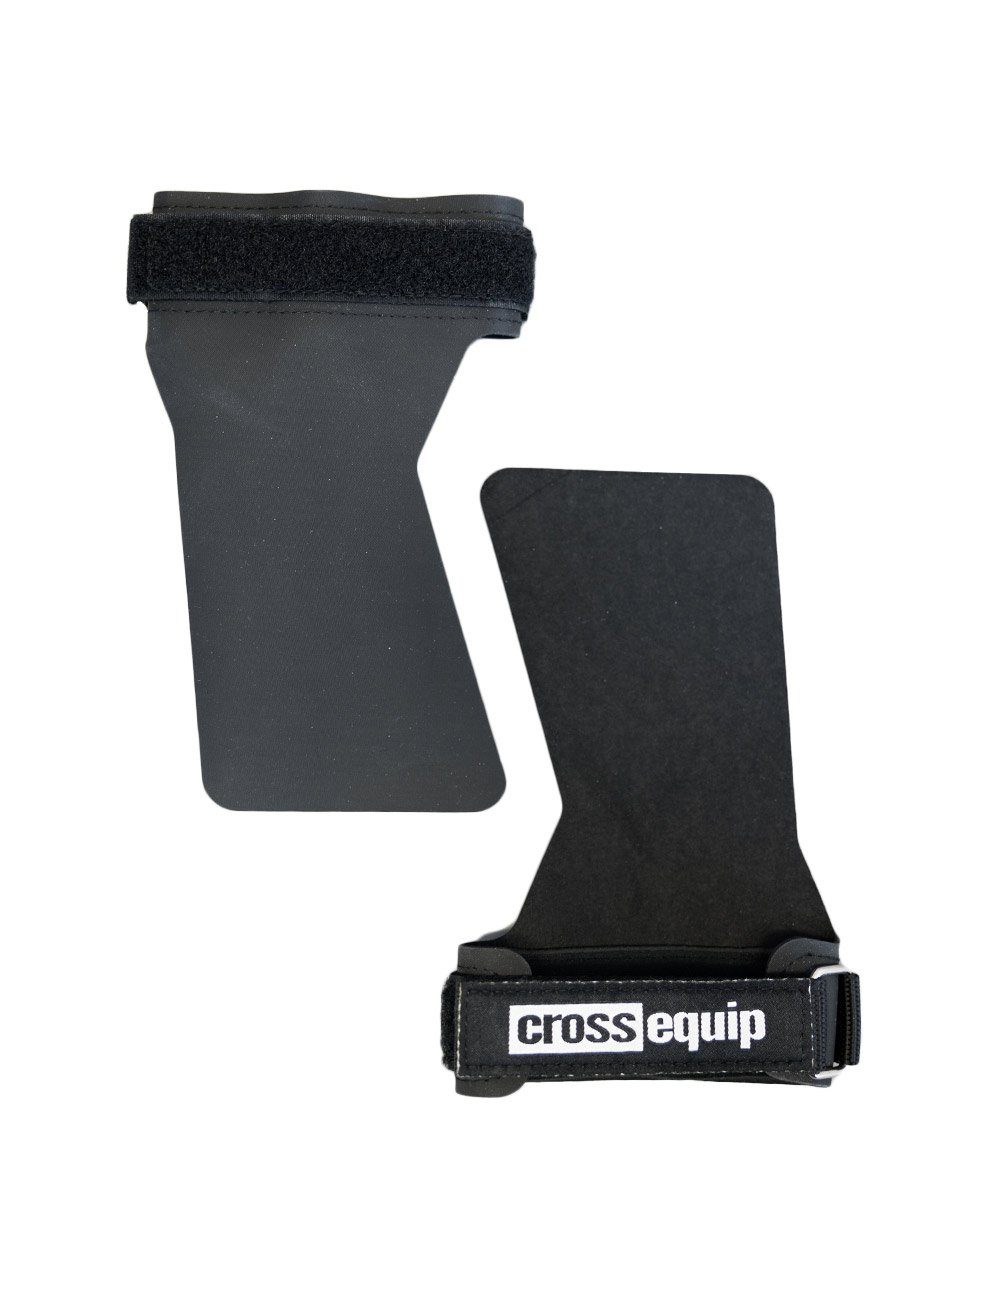 crossequip Multisporthandschuhe Fitness widerstandsfähigen Cheater aus einer gefertigt für Handschuh Gummimischung speziellen Zughilfe Krafttraining Griffhilfe Grips